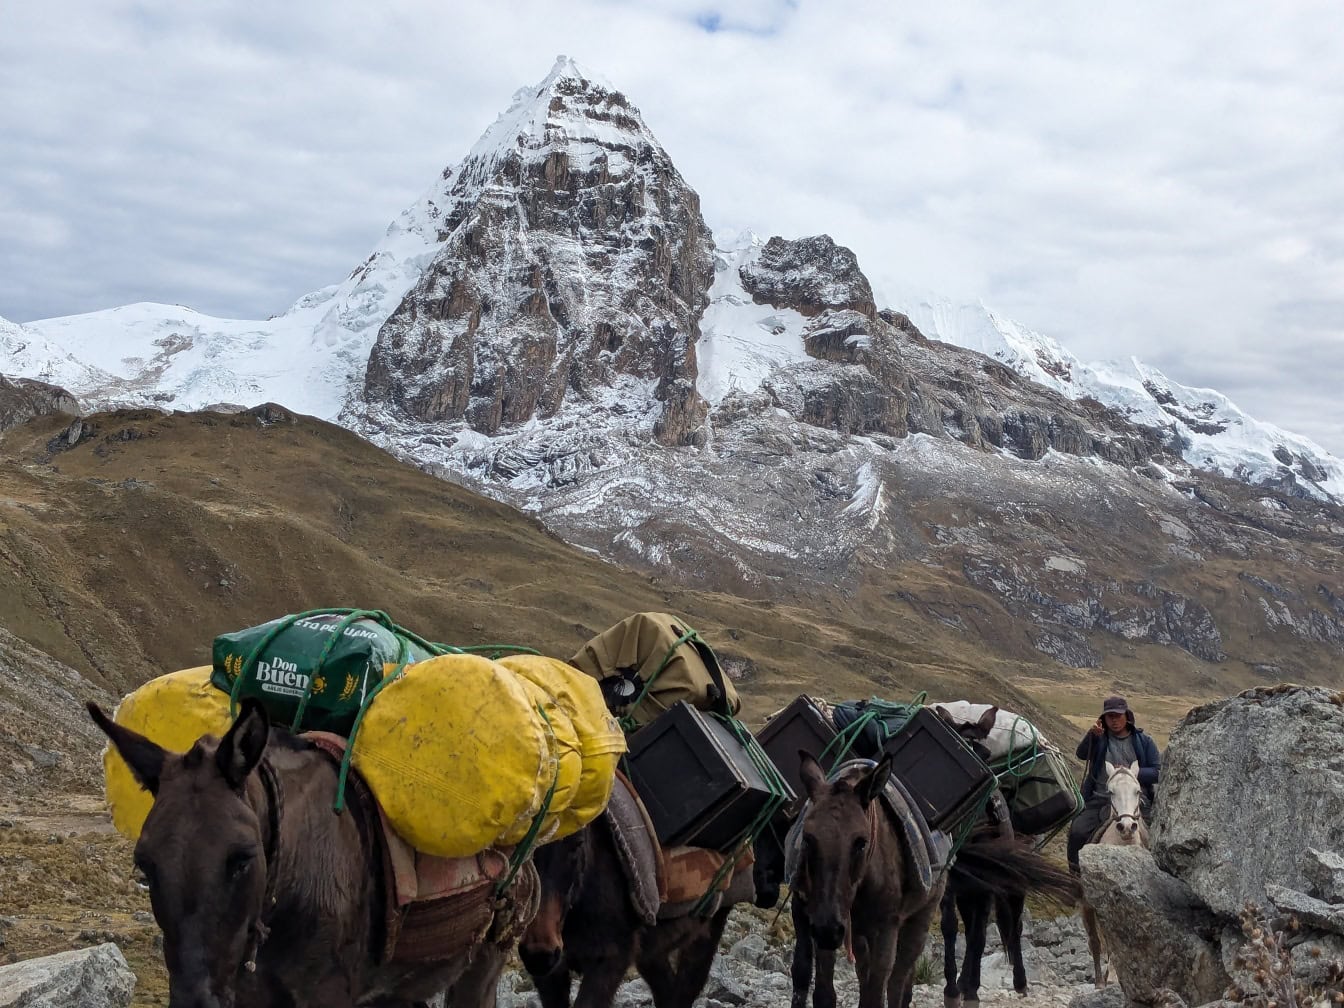 Caravană de catâri peruvieni care transportă marfă în lanțul muntos Cordillera Huayhuash din Anzi din Peru